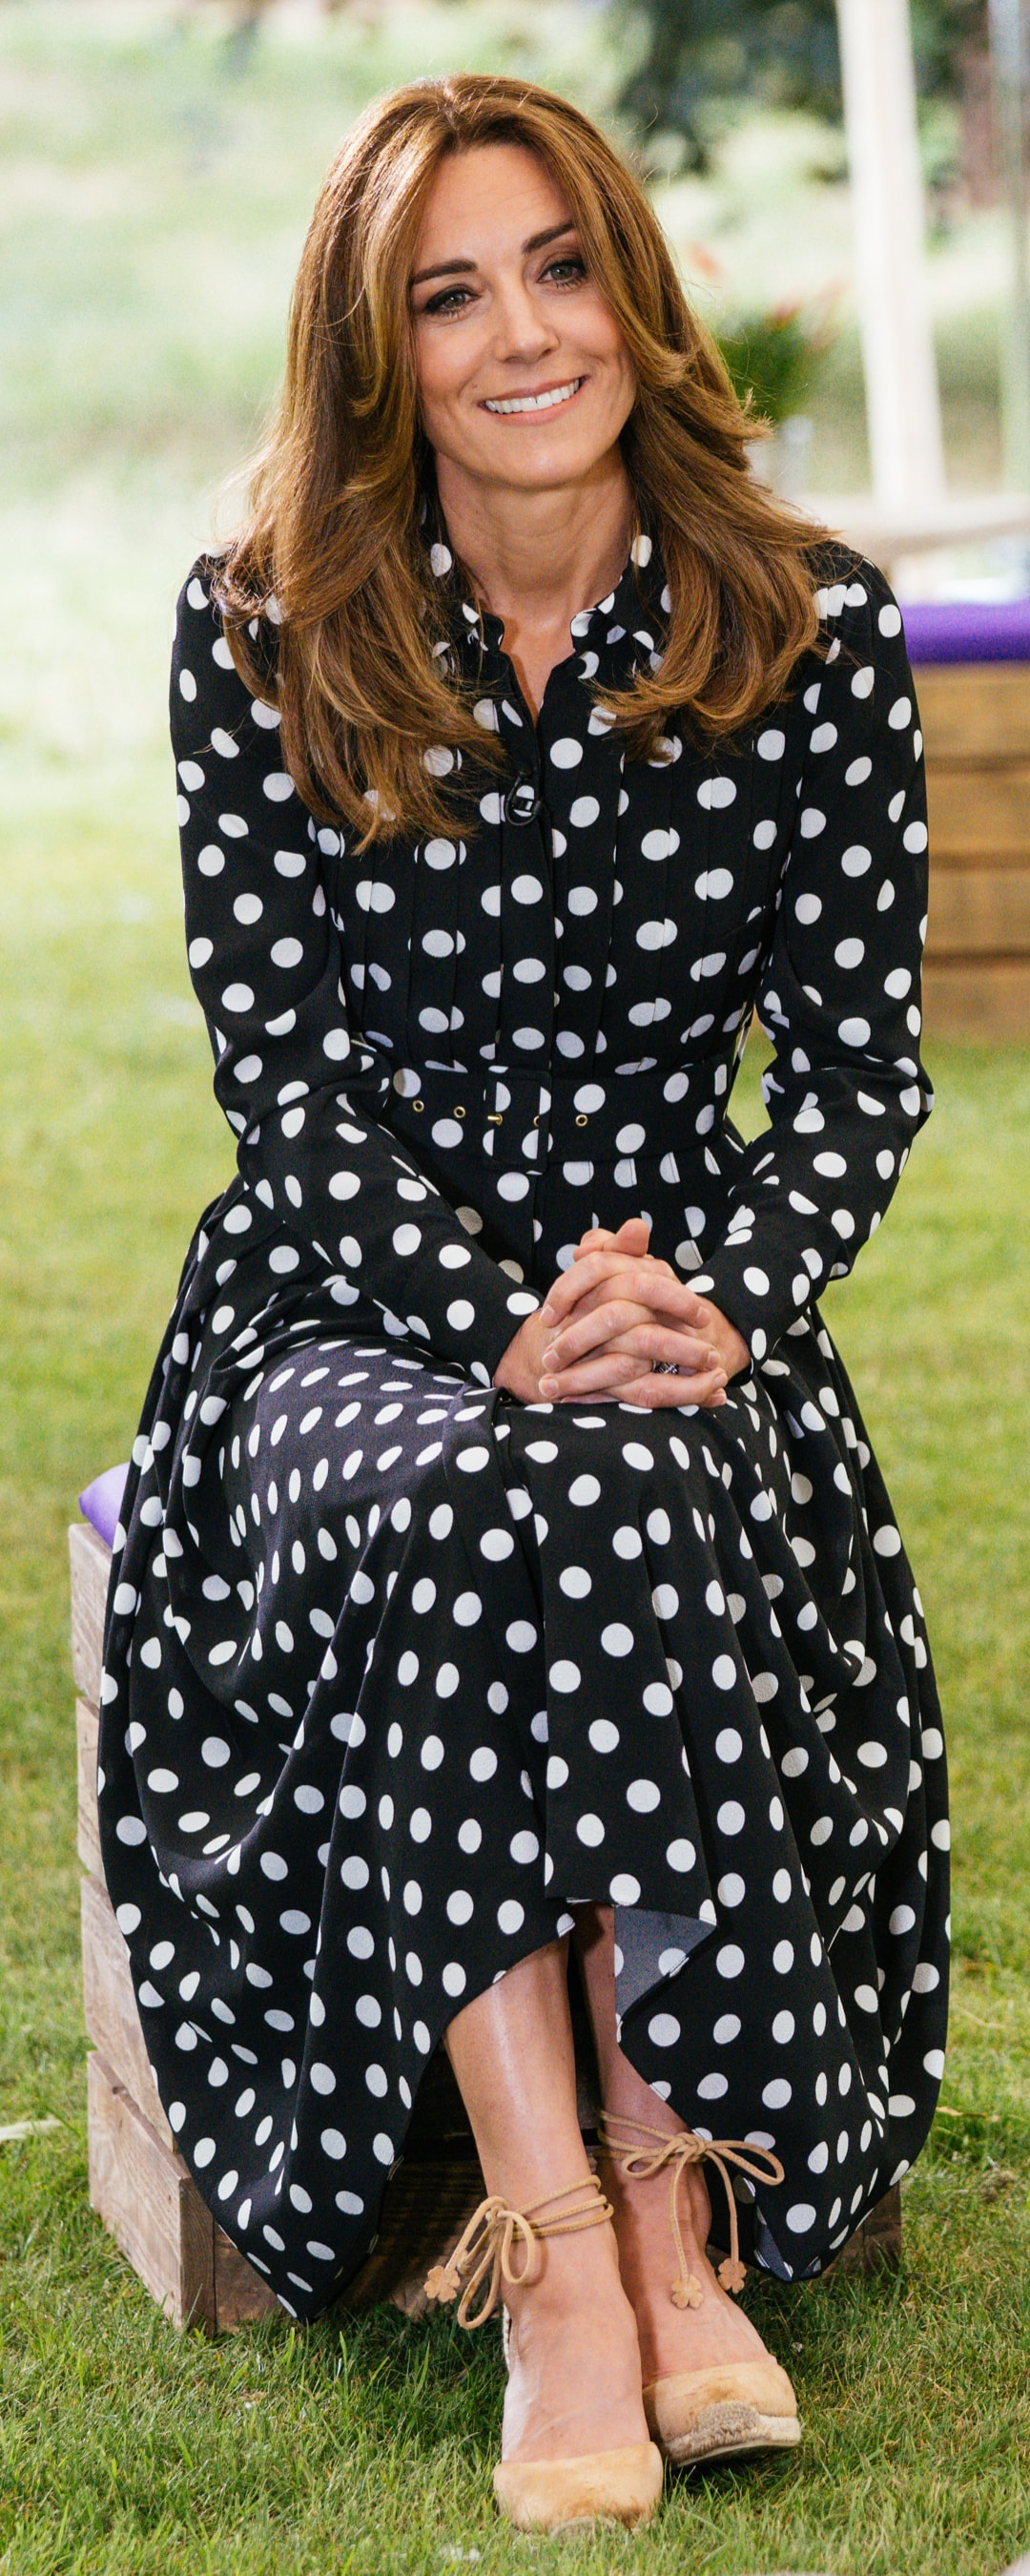 Emilia Wickstead Anatola Polka-Dot Shirtdress as seen on Kate Middleton, The Duchess of Cambridge